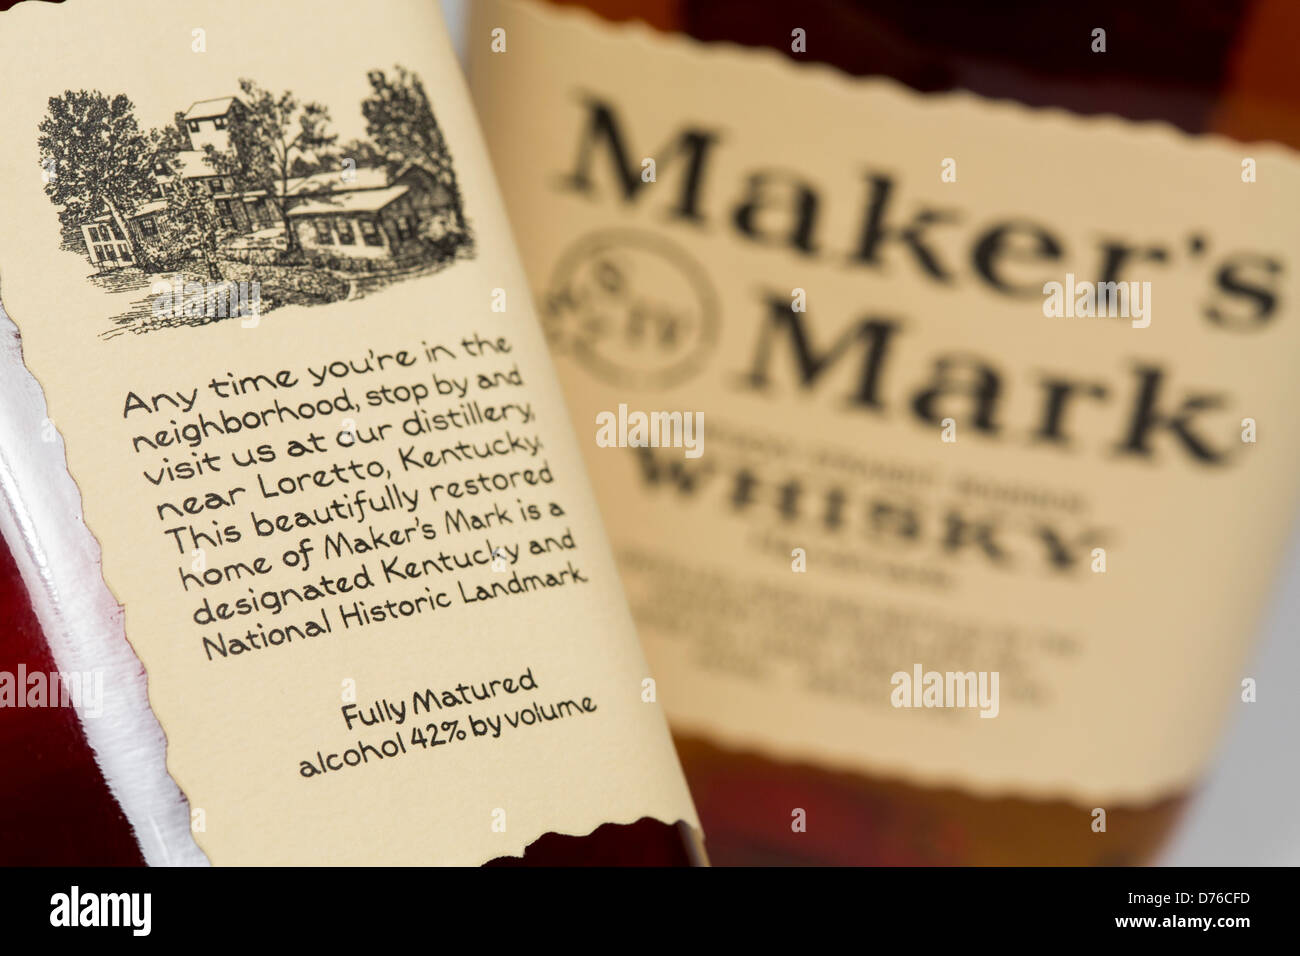 Makers Mark Whiskey um 42 % (84 Beweis) Alkohol Volumenprozent aus seiner ursprünglichen 45 % (90 Beweis) Alkohol verwässert wurde. Stockfoto